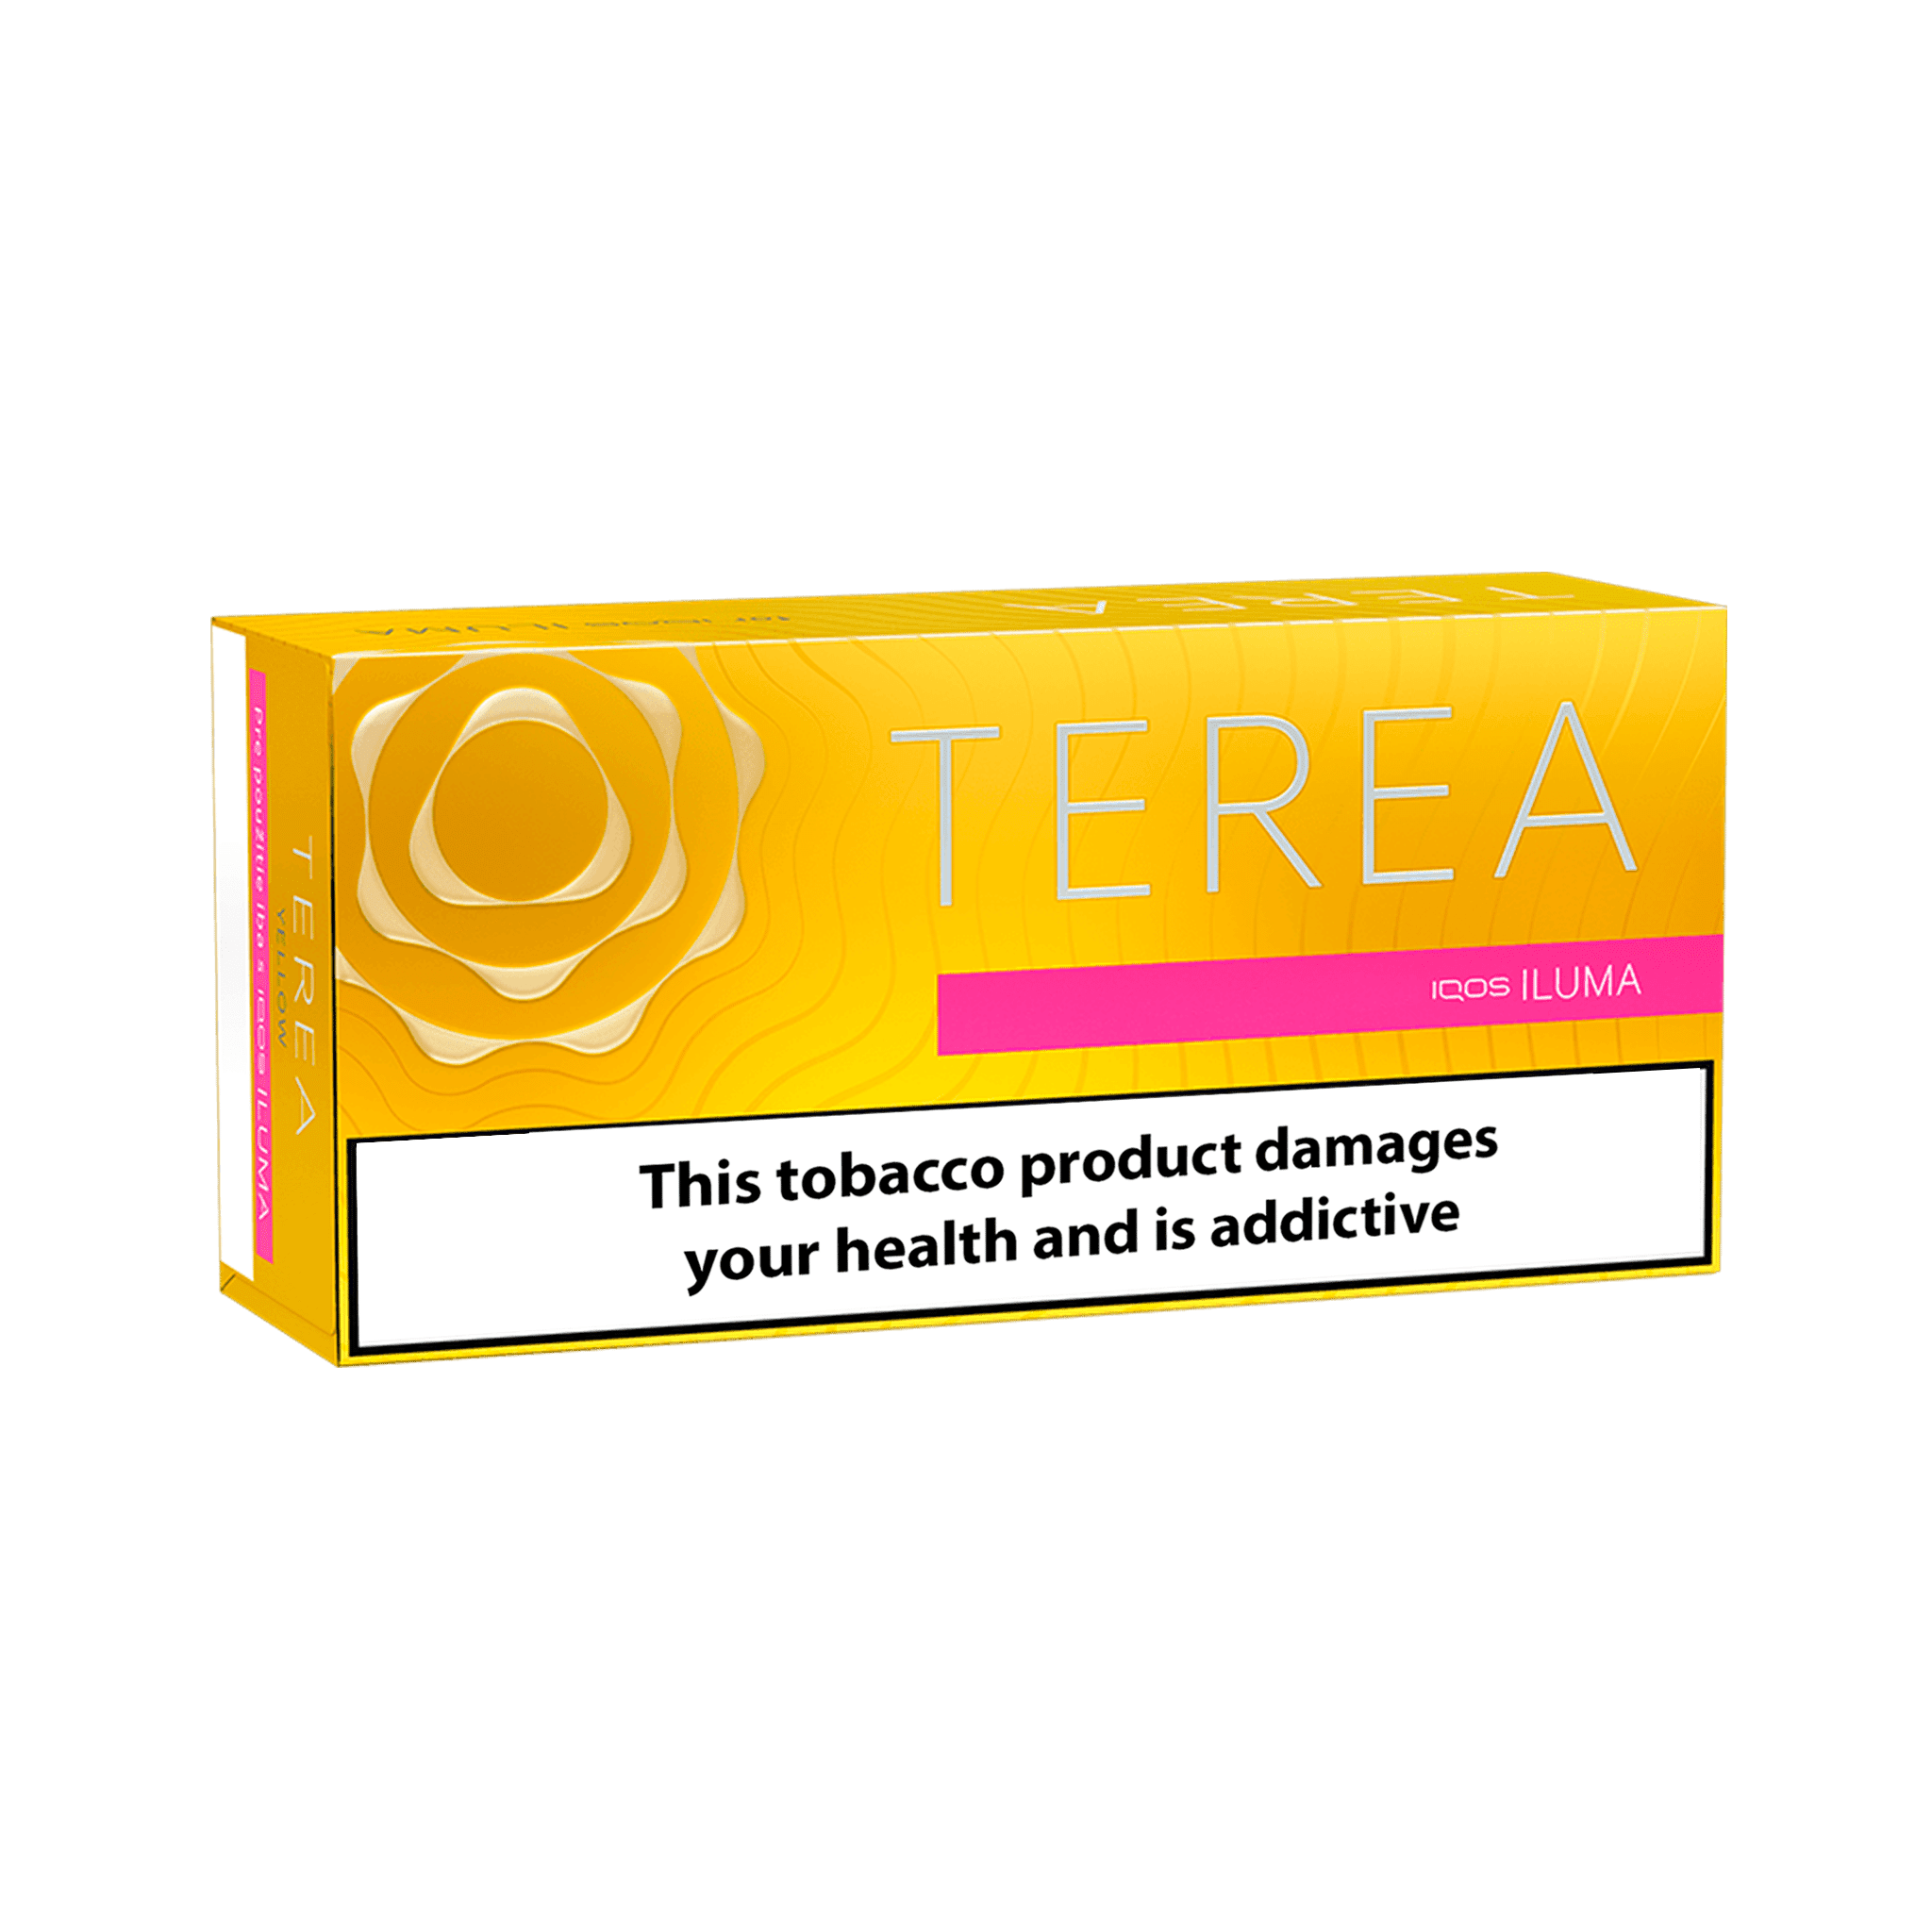 Terea Yellow - Buy Online